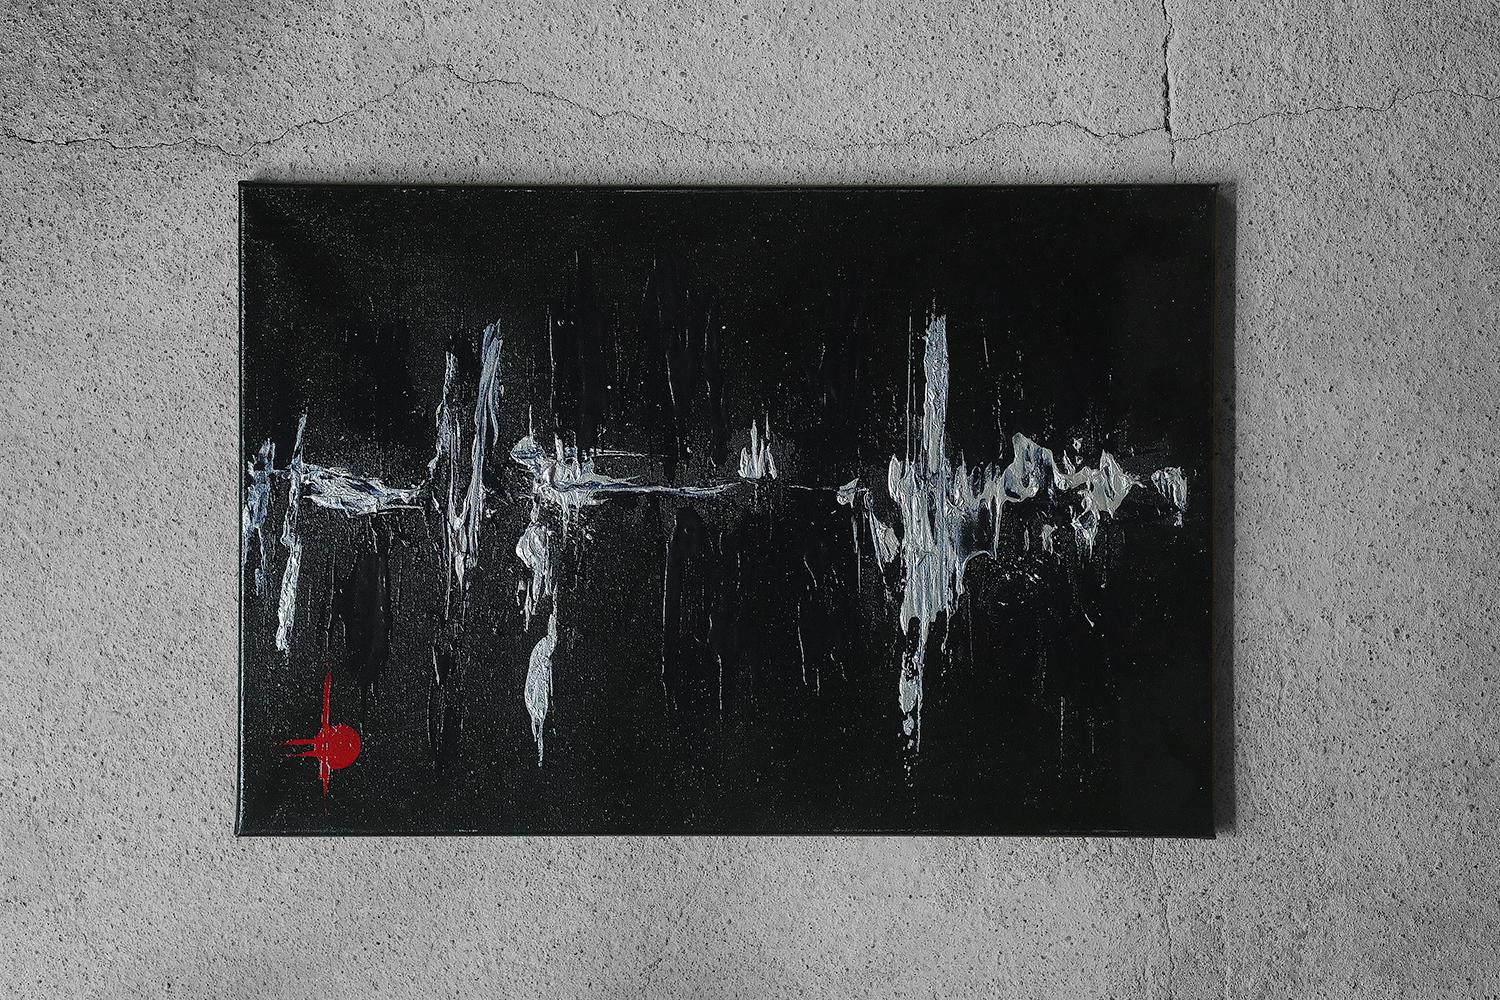 Auteur inconnu, Heartbeat
Acrylique sur toile
Œuvre signée Margu-20 au dos de la toile
Dimensions de travail 60/40
Œuvre non encadrée

Ouvrage en état d'origine vintage.